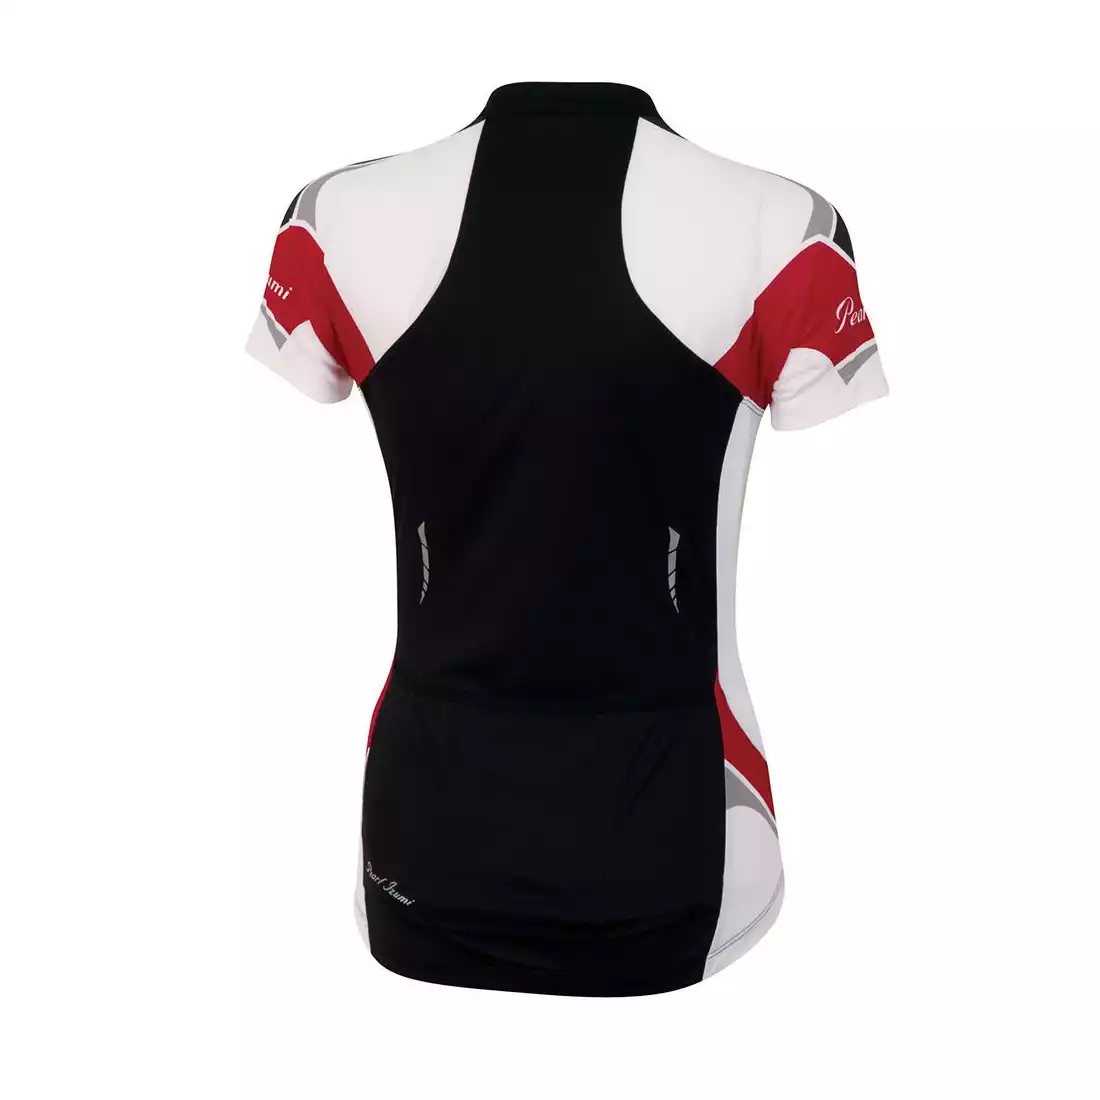 PEARL IZUMI - 11221301-4DK ELITE - damska koszulka rowerowa, kolor: Czarno-czerwony